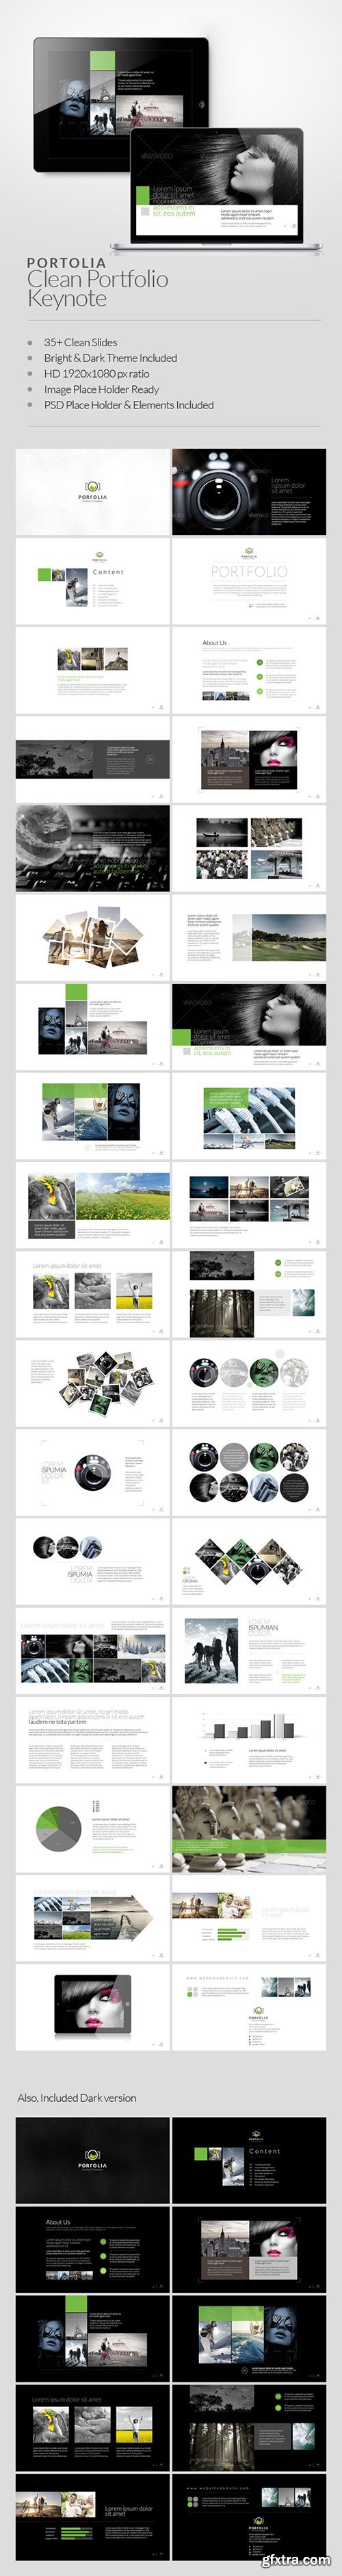 GraphicRiver - Portolia Multipurpose Clean Portfolio Keynote